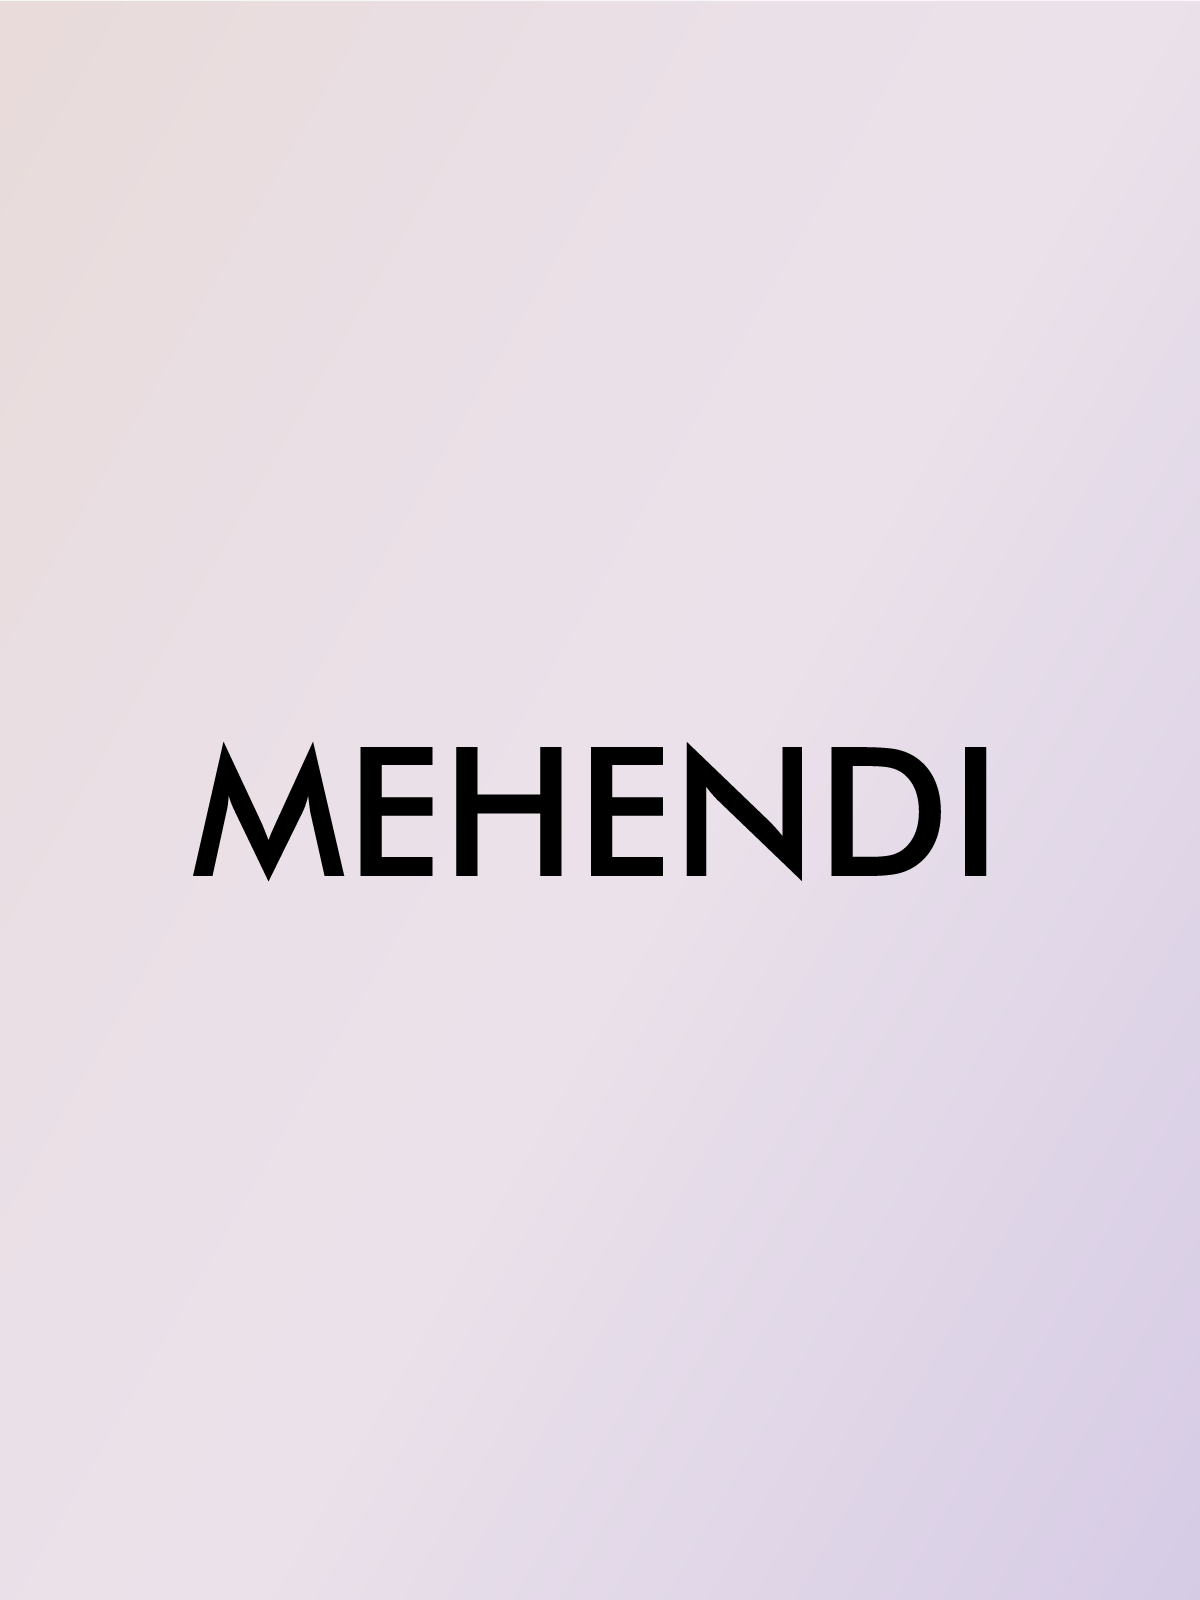 MEHENDI